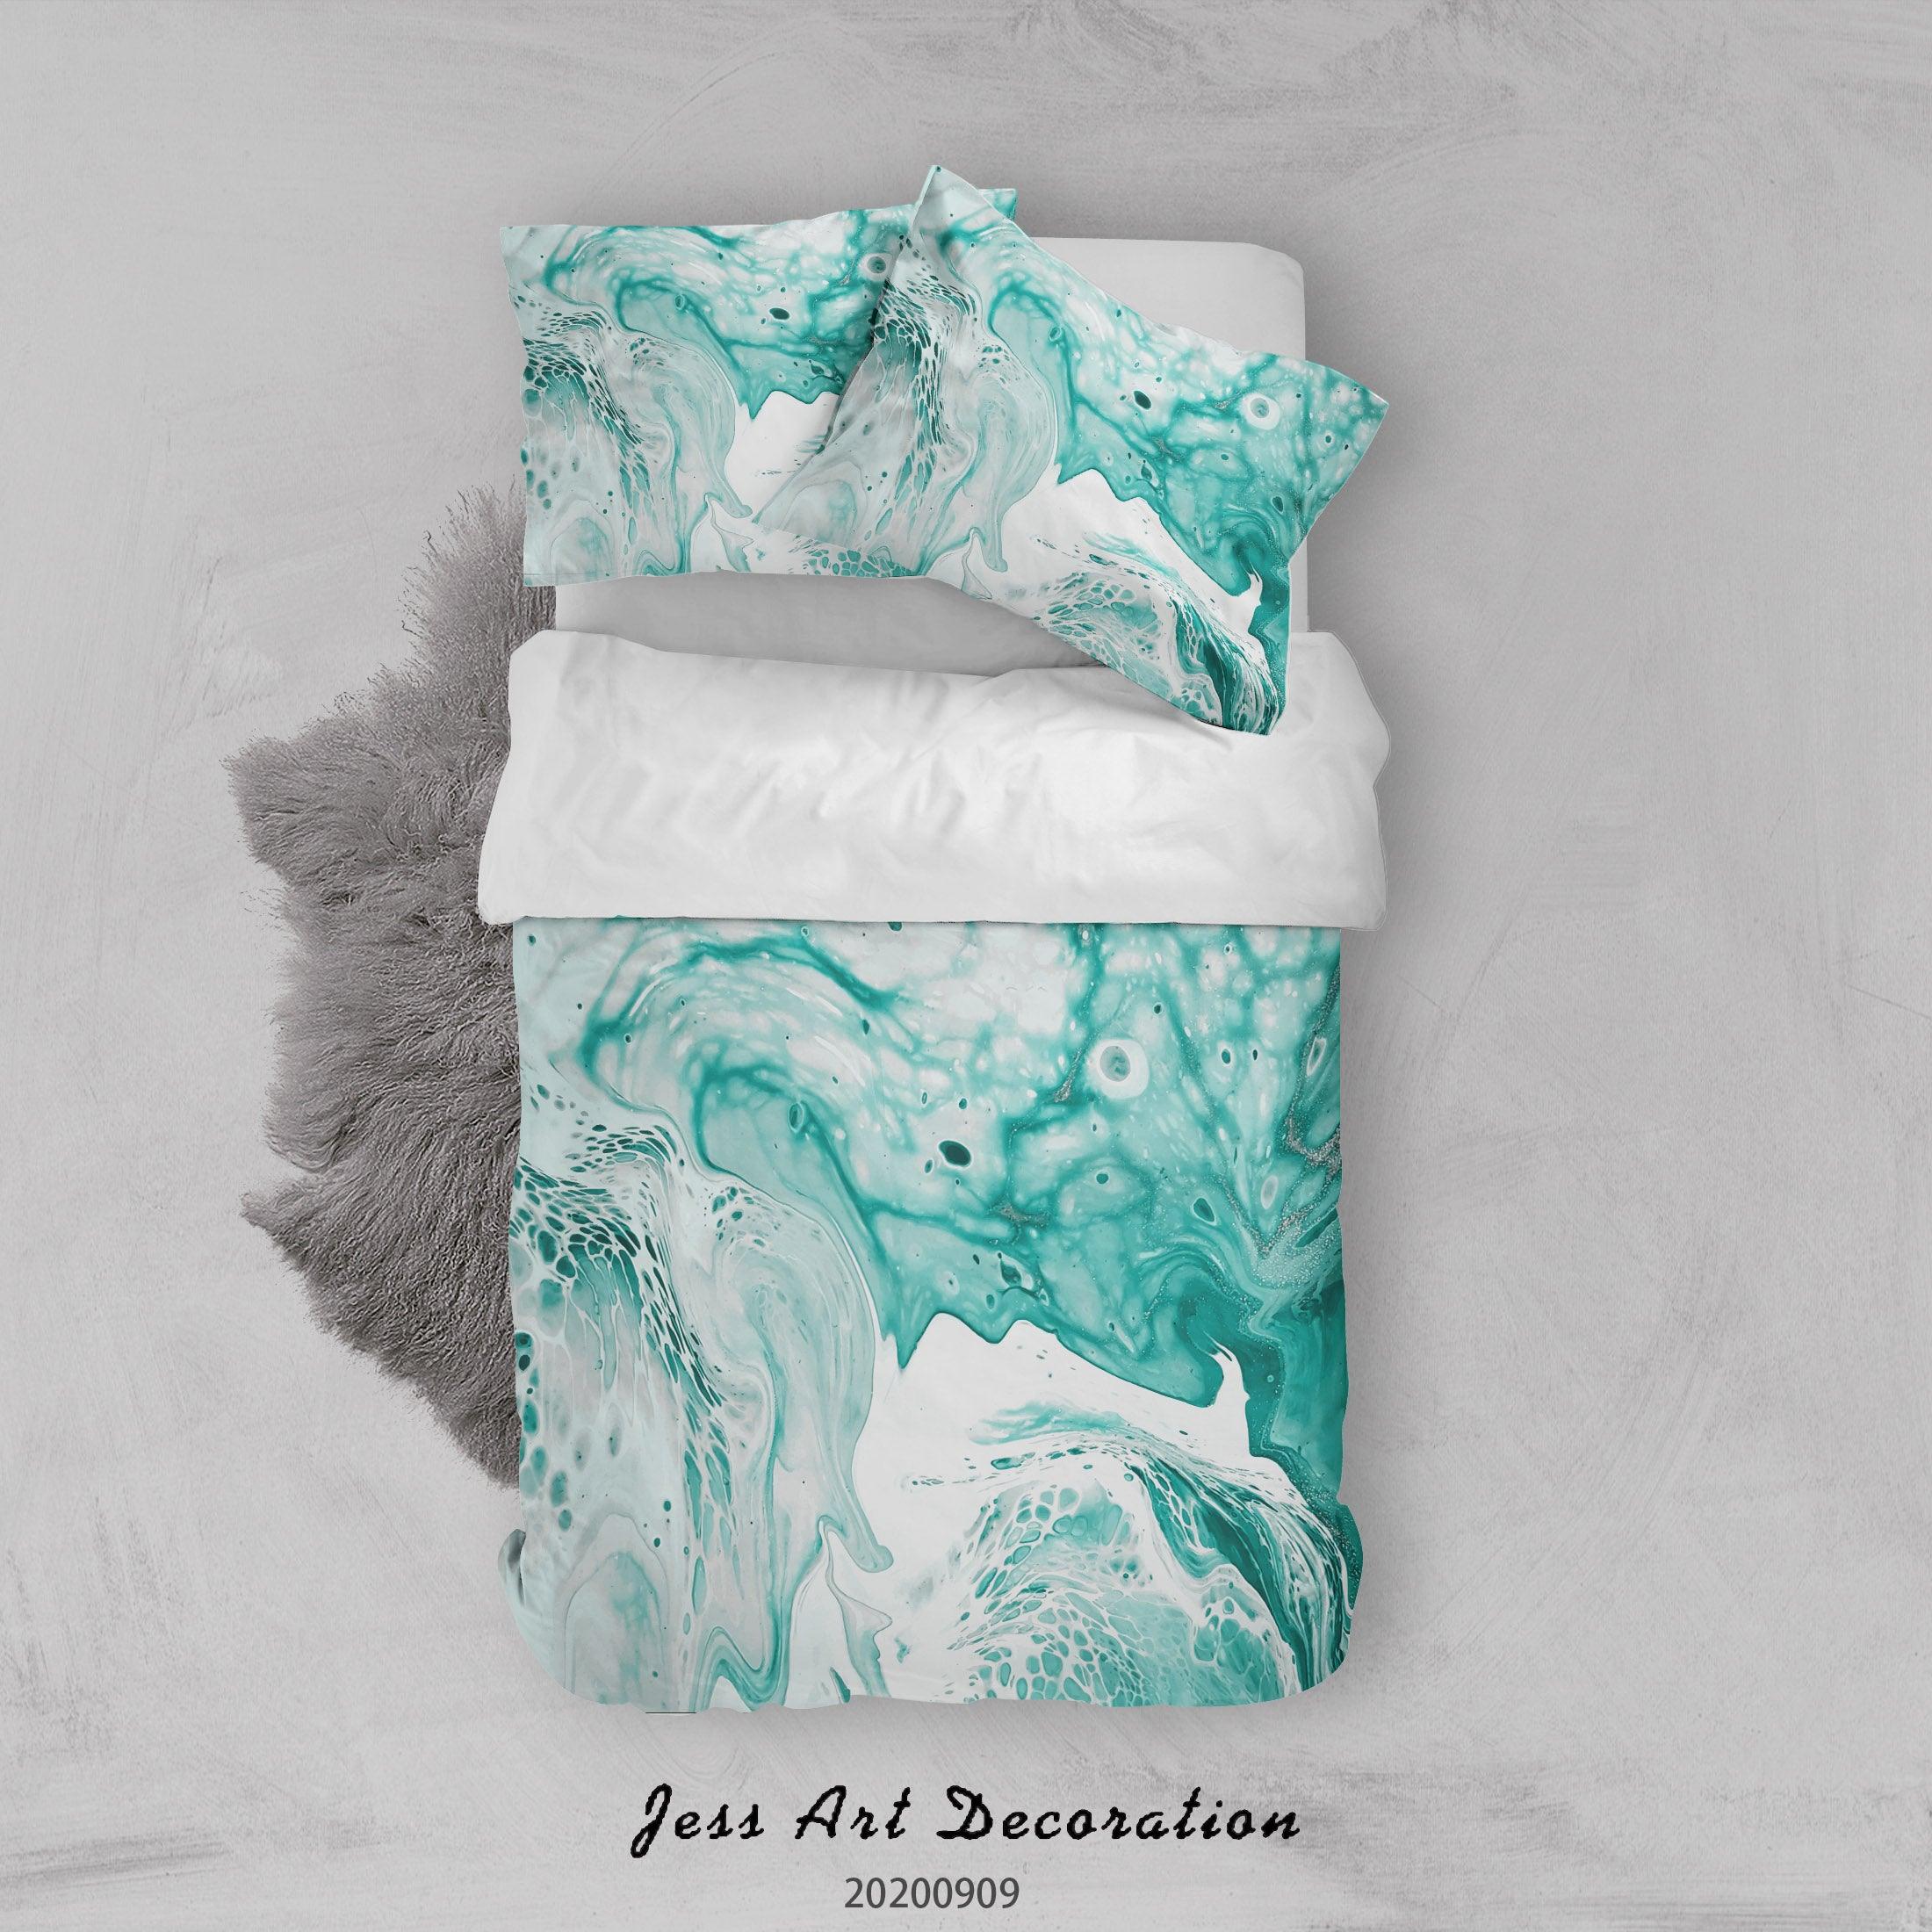 3D Papel Colorful Marmol Quilt Cover Set Bedding Set Duvet Cover Pillowcases WJ 1960- Jess Art Decoration